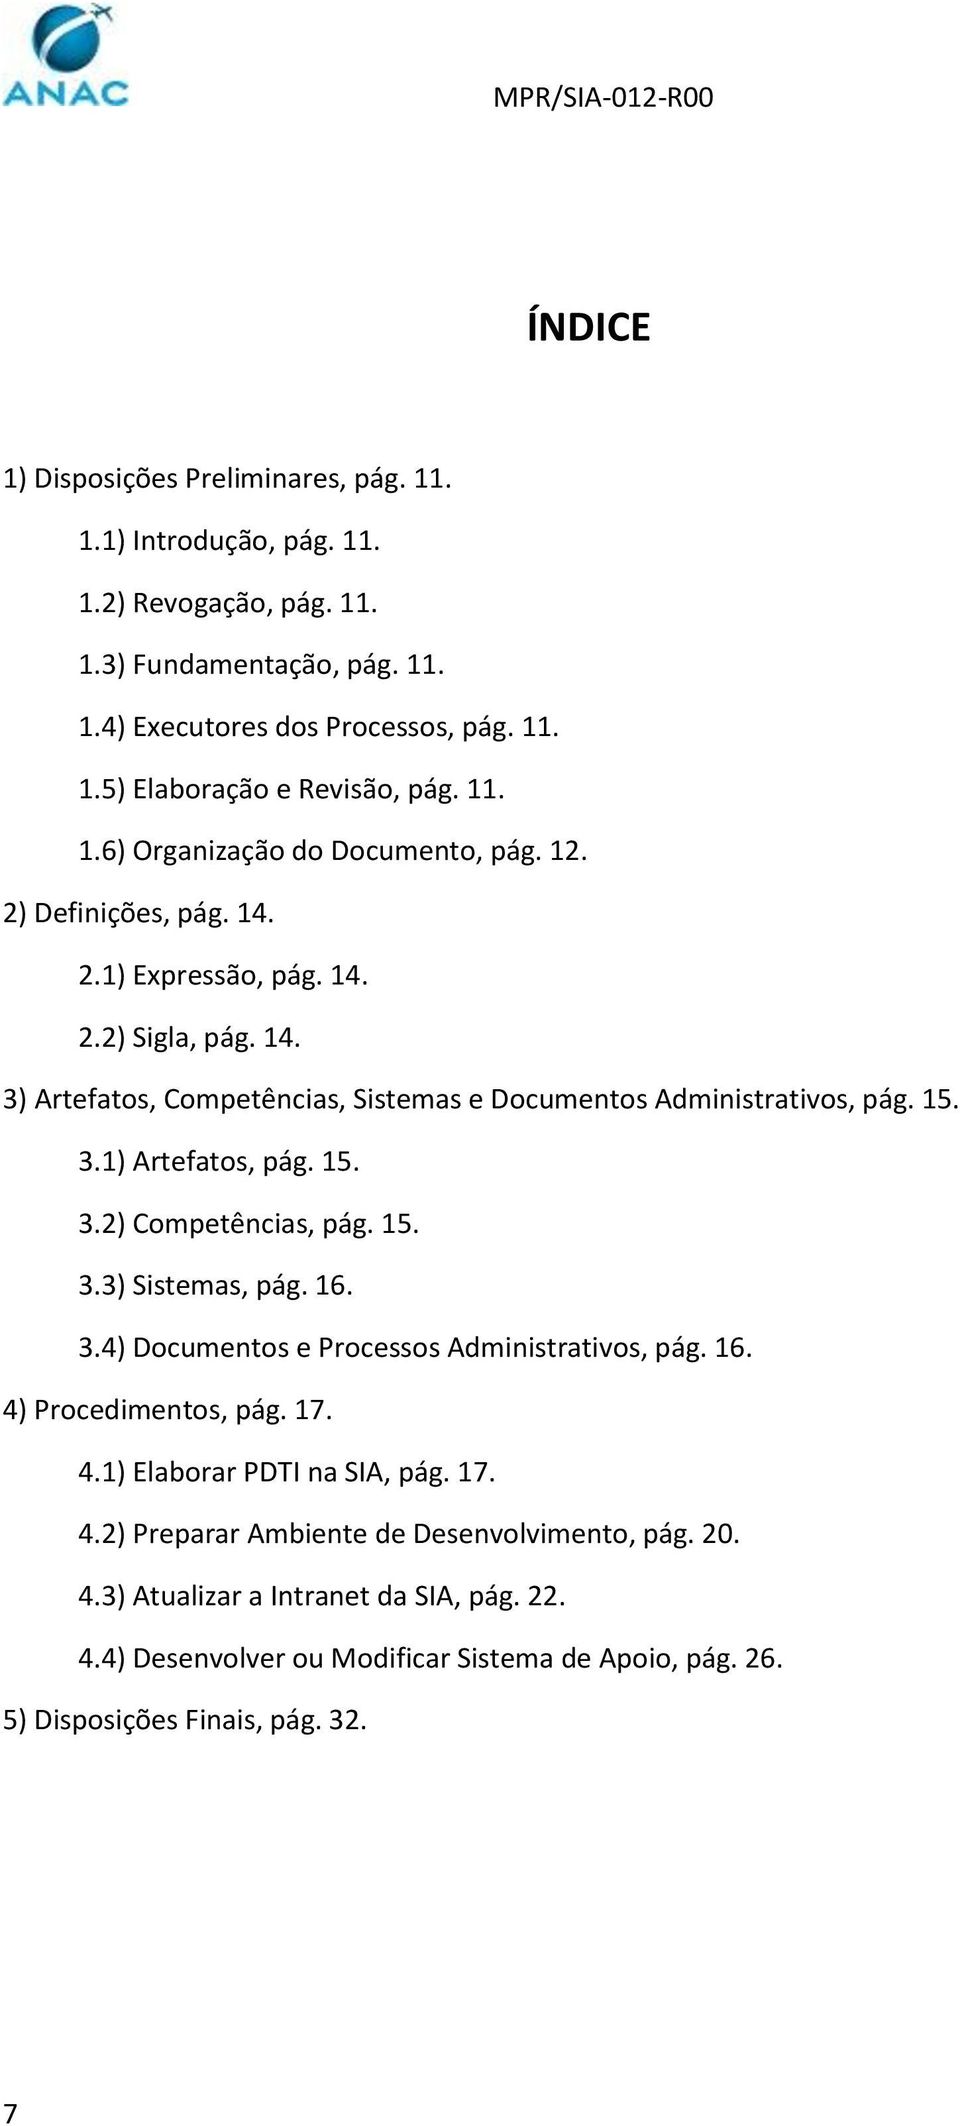 15. 3.2) Competências, pág. 15. 3.3) Sistemas, pág. 16. 3.4) Documentos e Processos Administrativos, pág. 16. 4) Procedimentos, pág. 17. 4.1) Elaborar PDTI na SIA, pág. 17. 4.2) Preparar Ambiente de Desenvolvimento, pág.